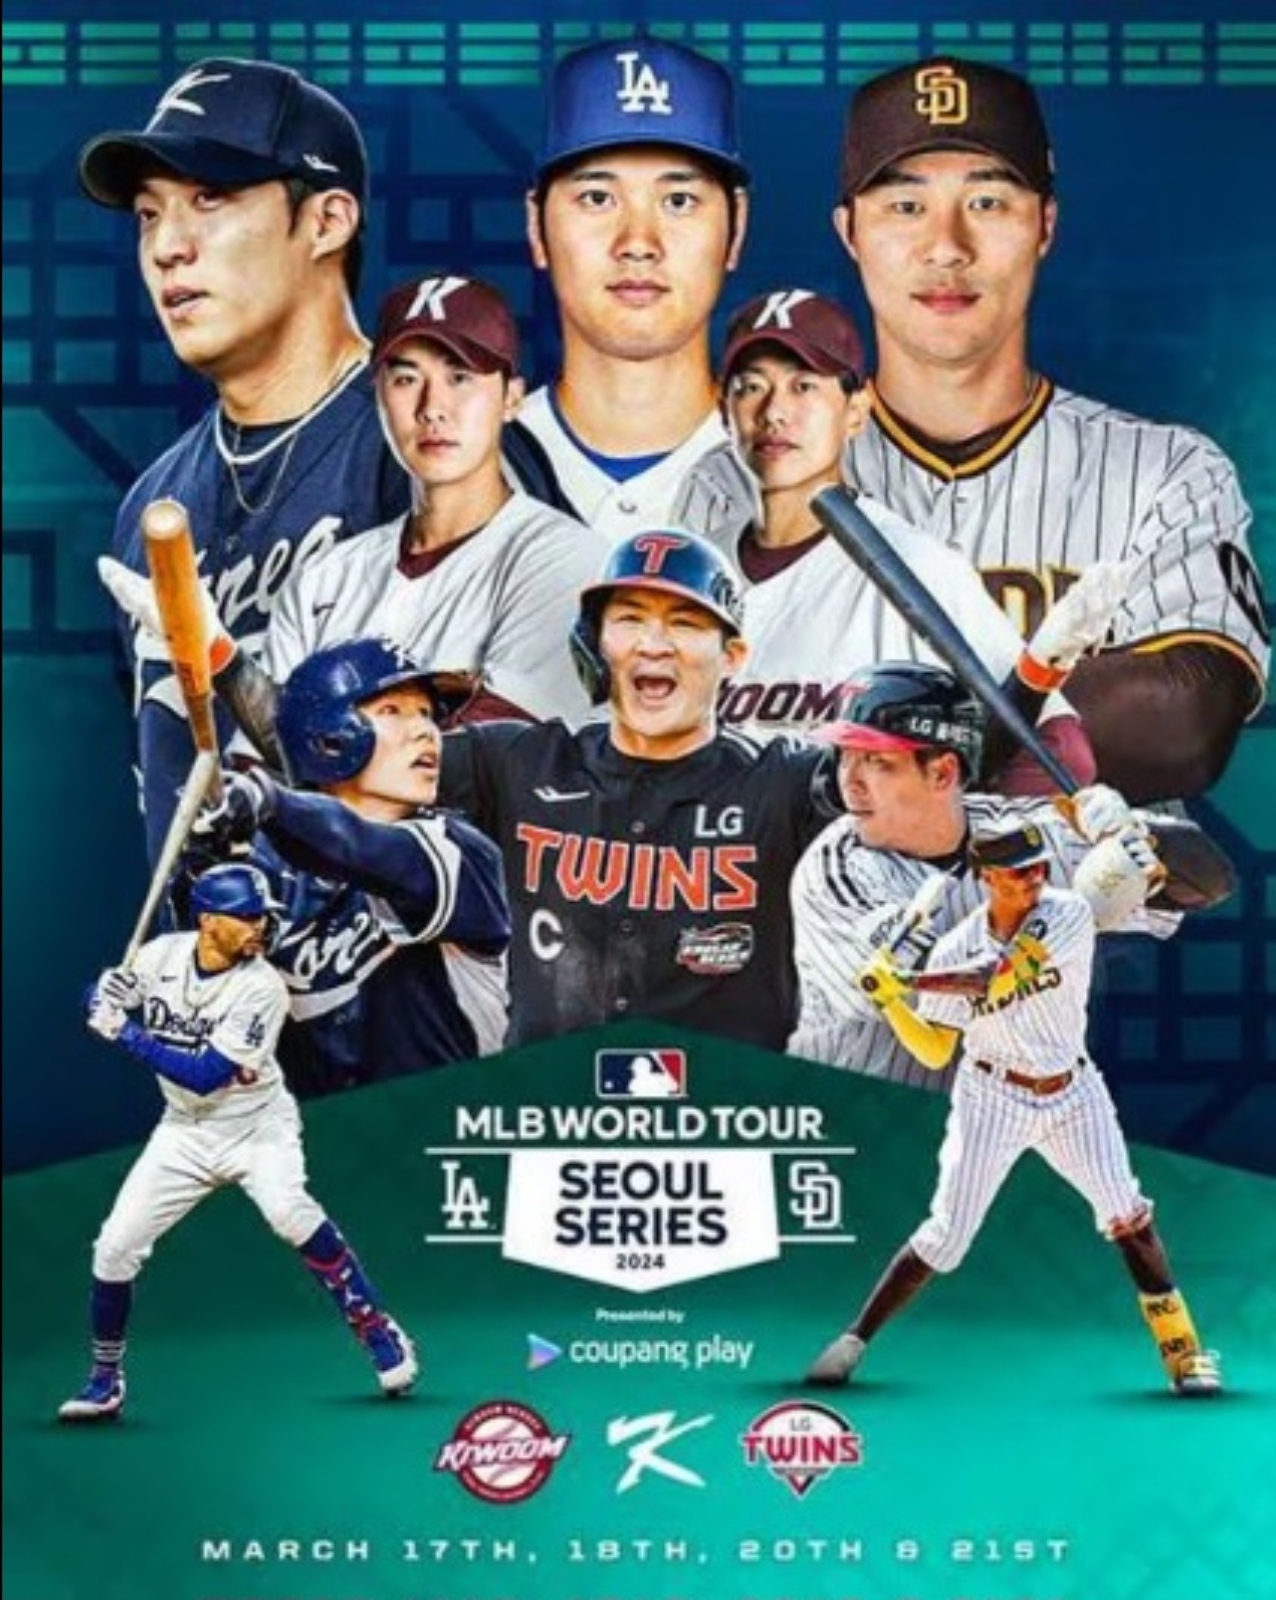 mlb 월드투어 서울 시리즈 경기 포스터. 오타니 쇼헤이 선수의 얼굴이 보인다.